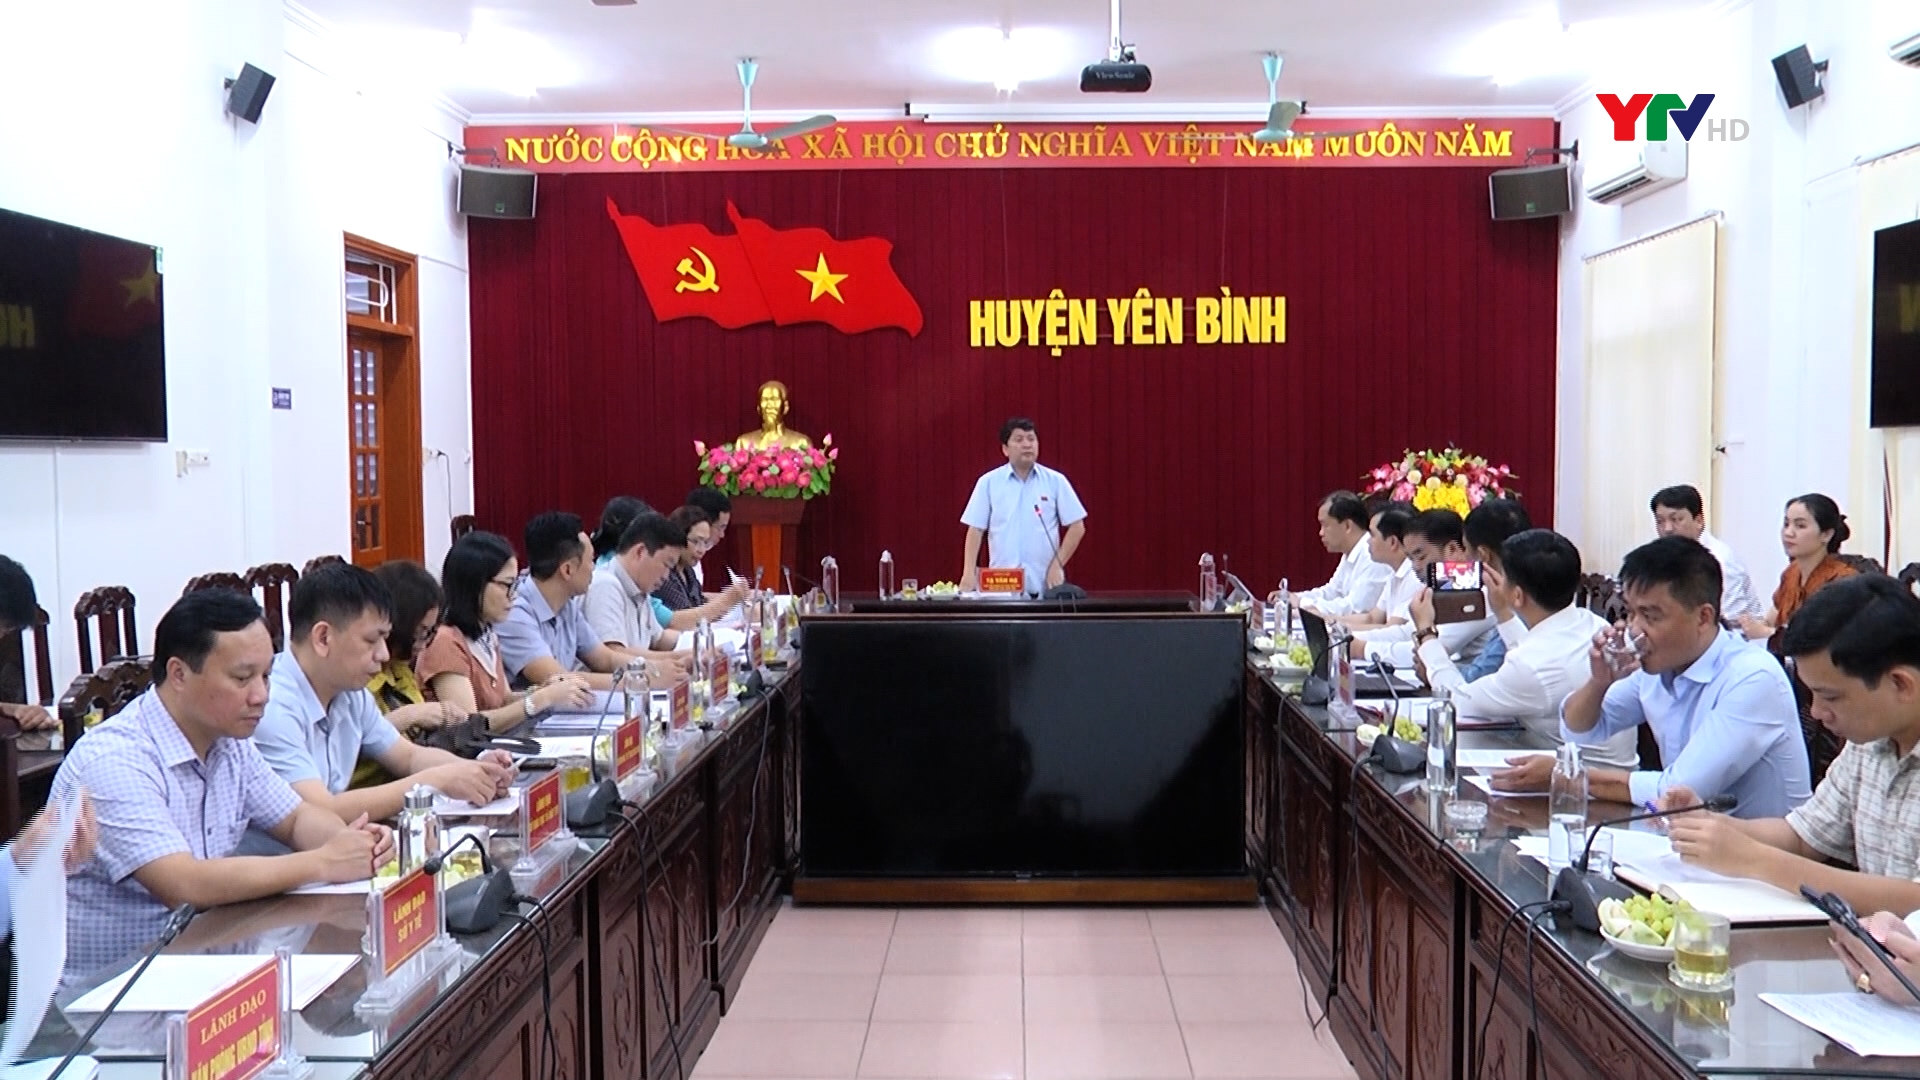 Ủy ban Văn hóa, giáo dục Quốc hội khảo sát chuyên đề “Việc thực hiện chính sách, pháp luật về phòng chống đuối nước trẻ em” tại Yên Bình